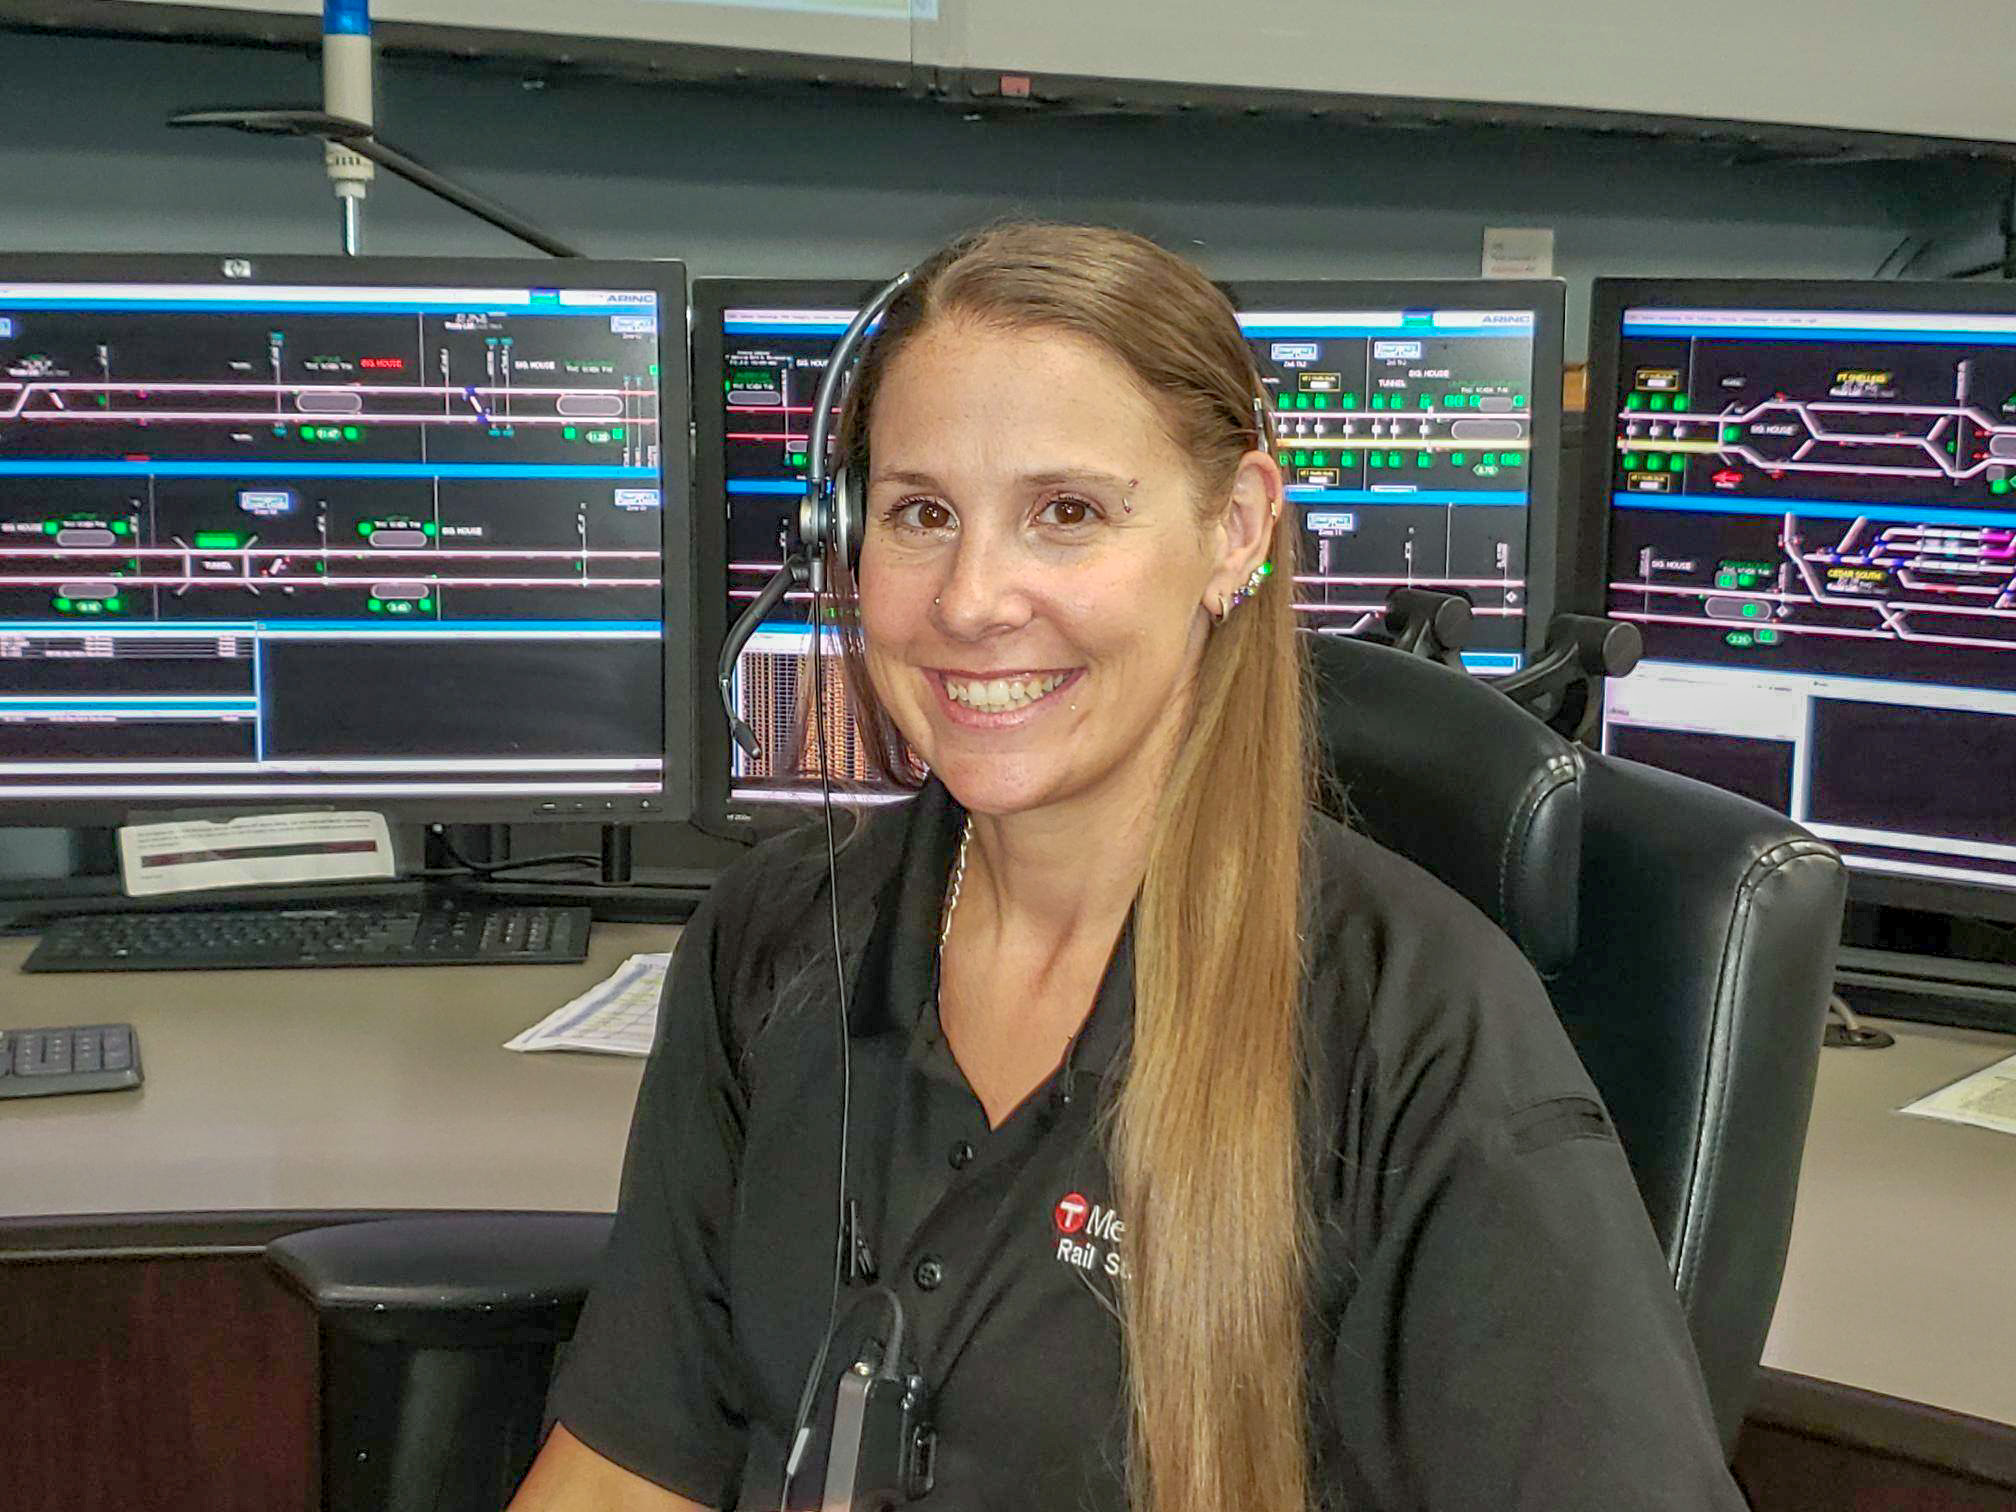 Rail Supervisor Jennifer Schultz in the Rail Control Center.